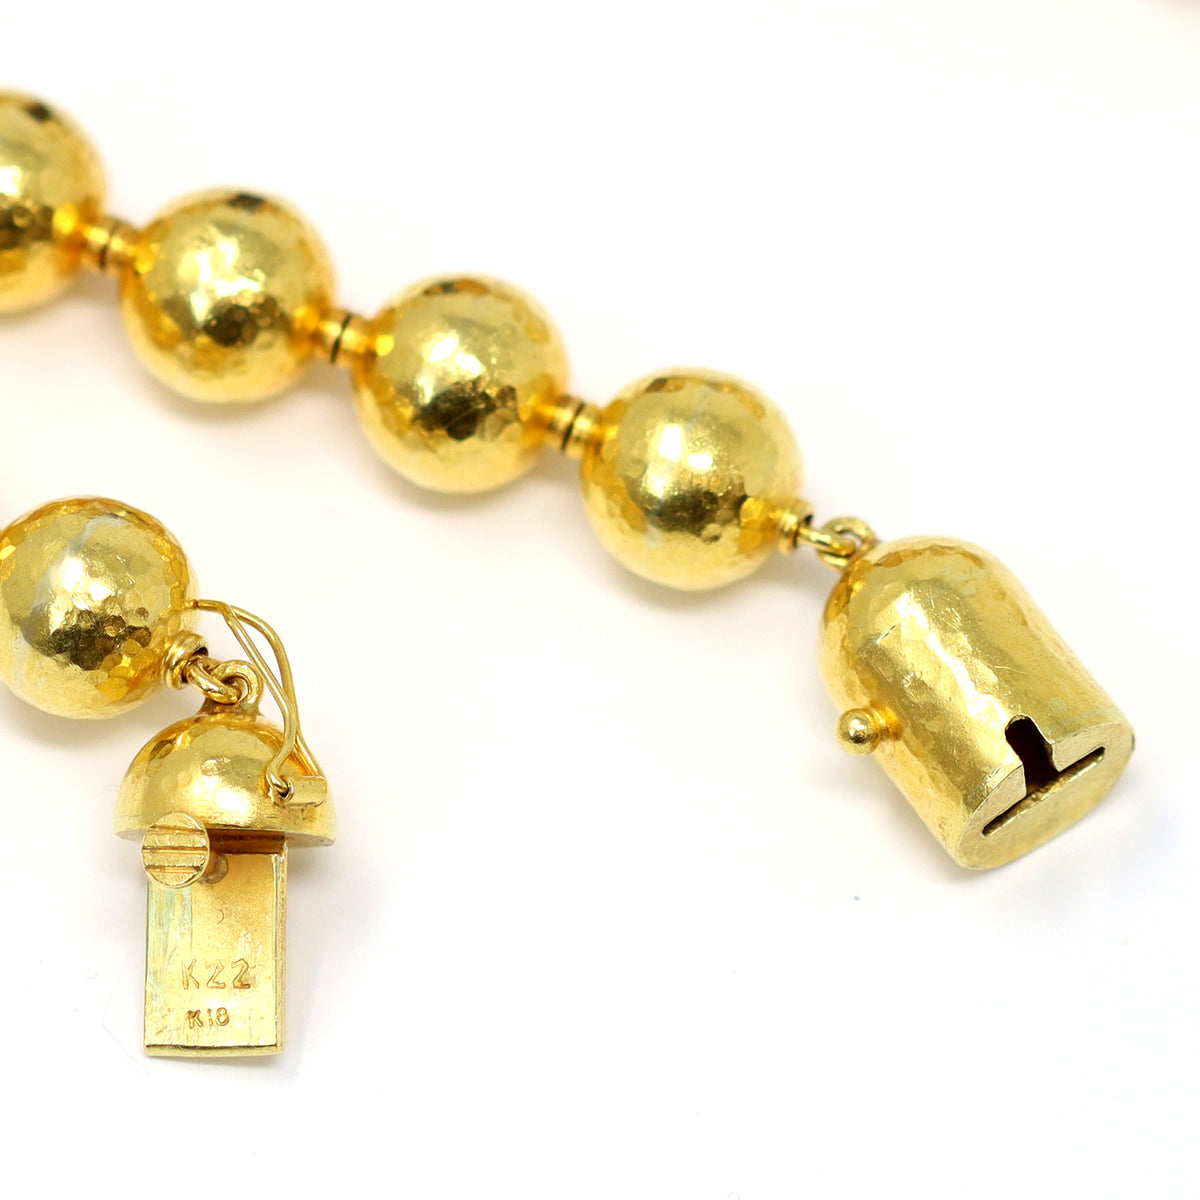 High Karat Gold Necklace with Lapis Lazuli Beads CA 1970